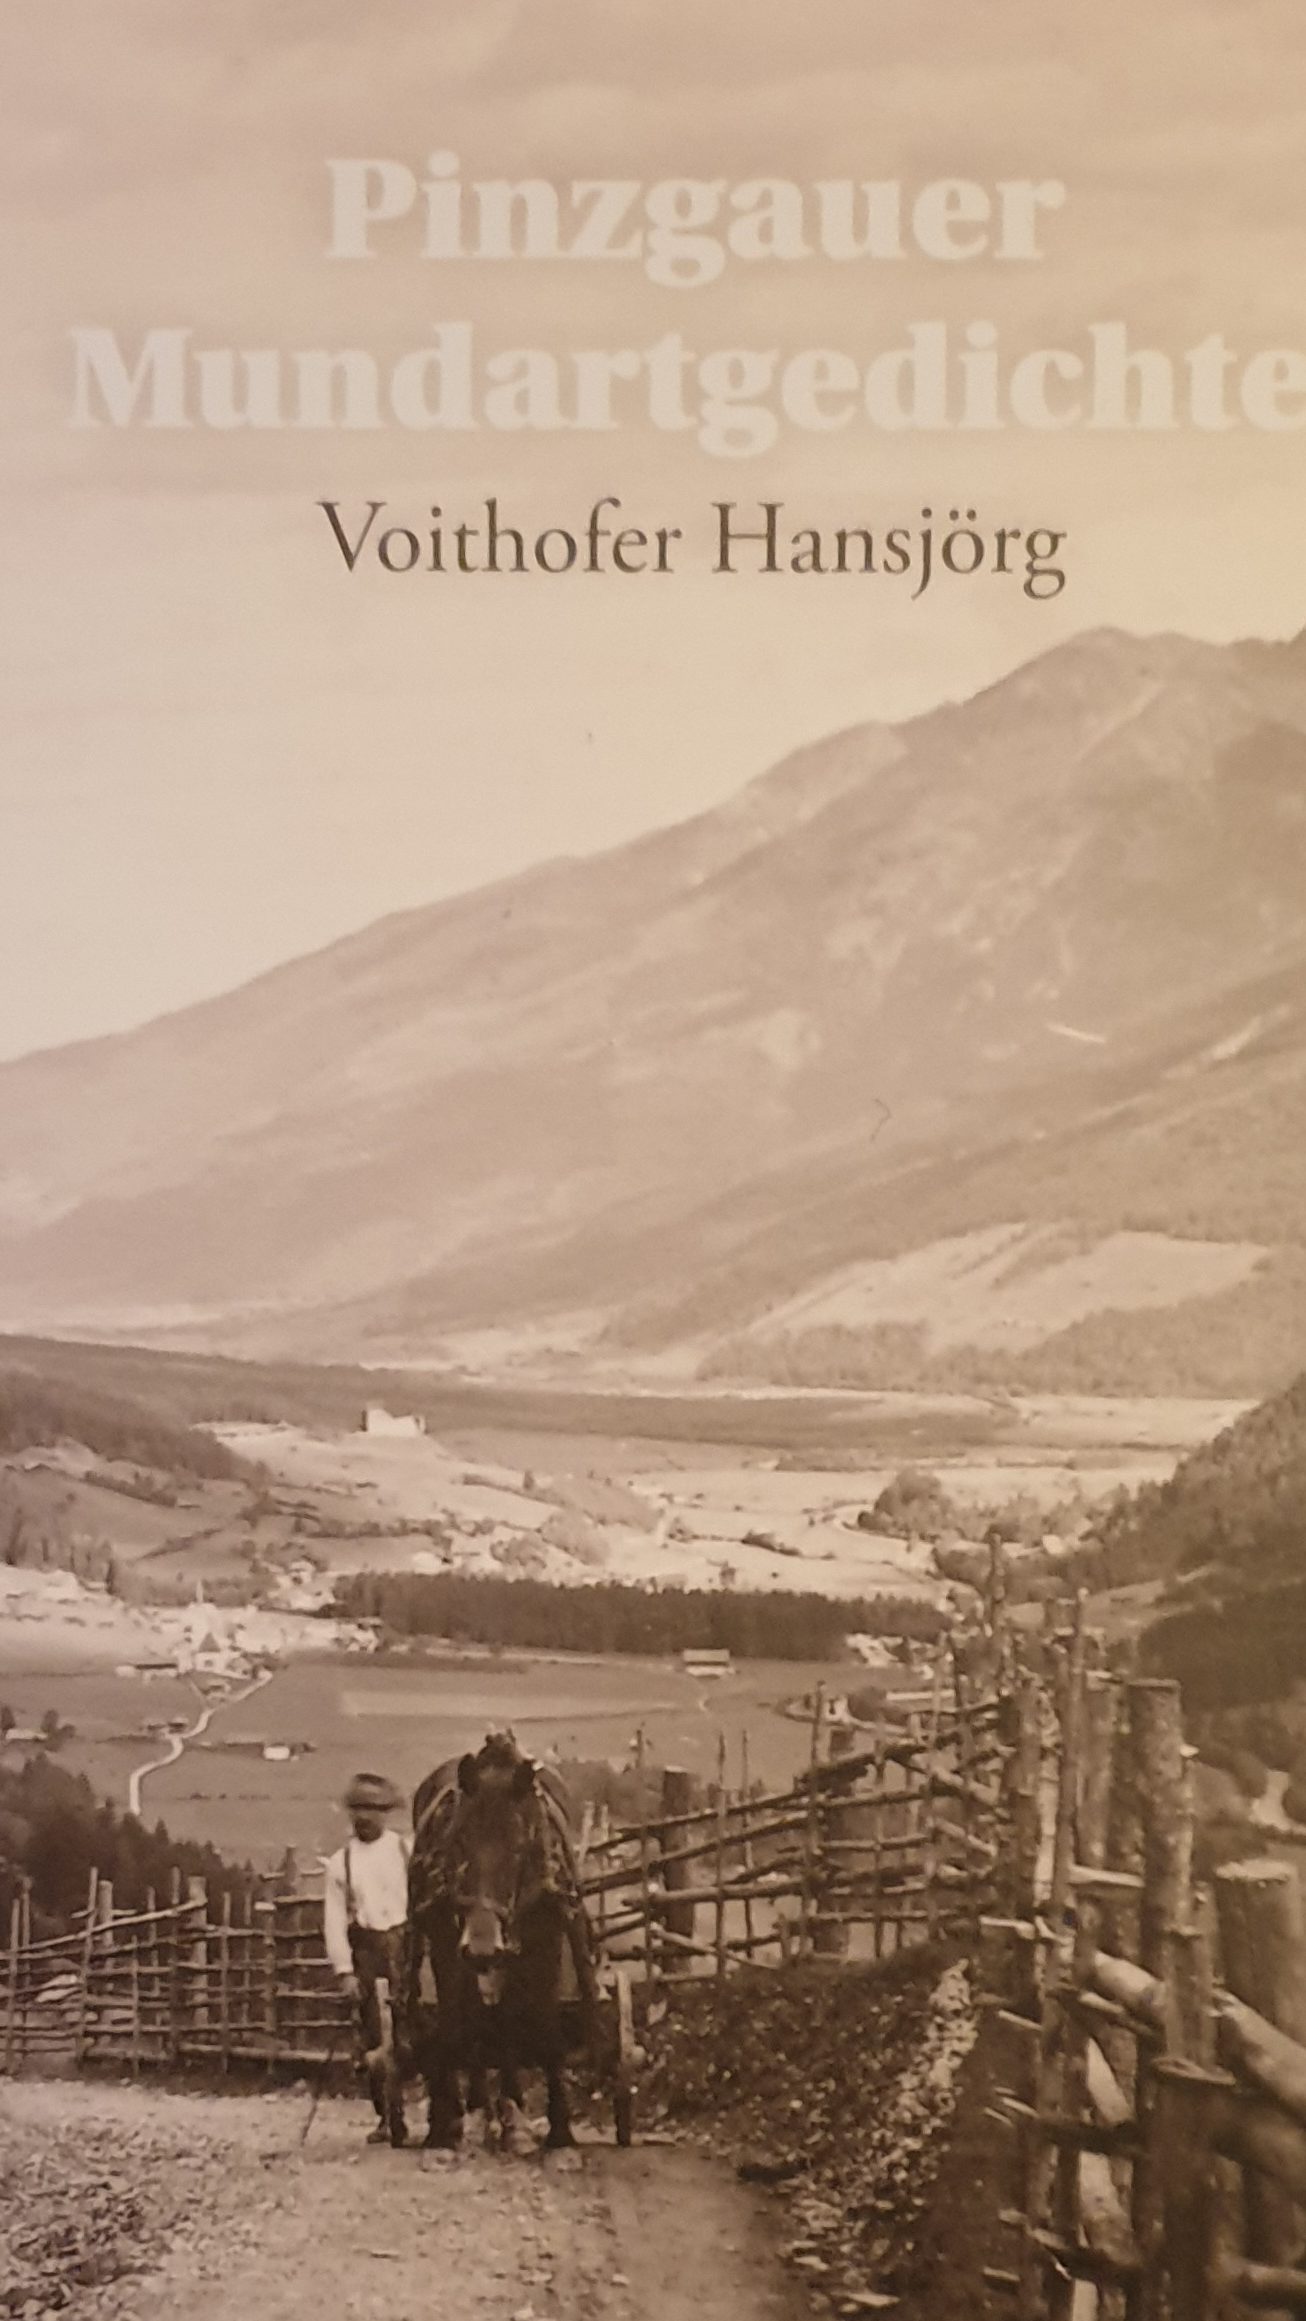 Pinzgauer Mundartgedichte von Hansjörg Voithofer